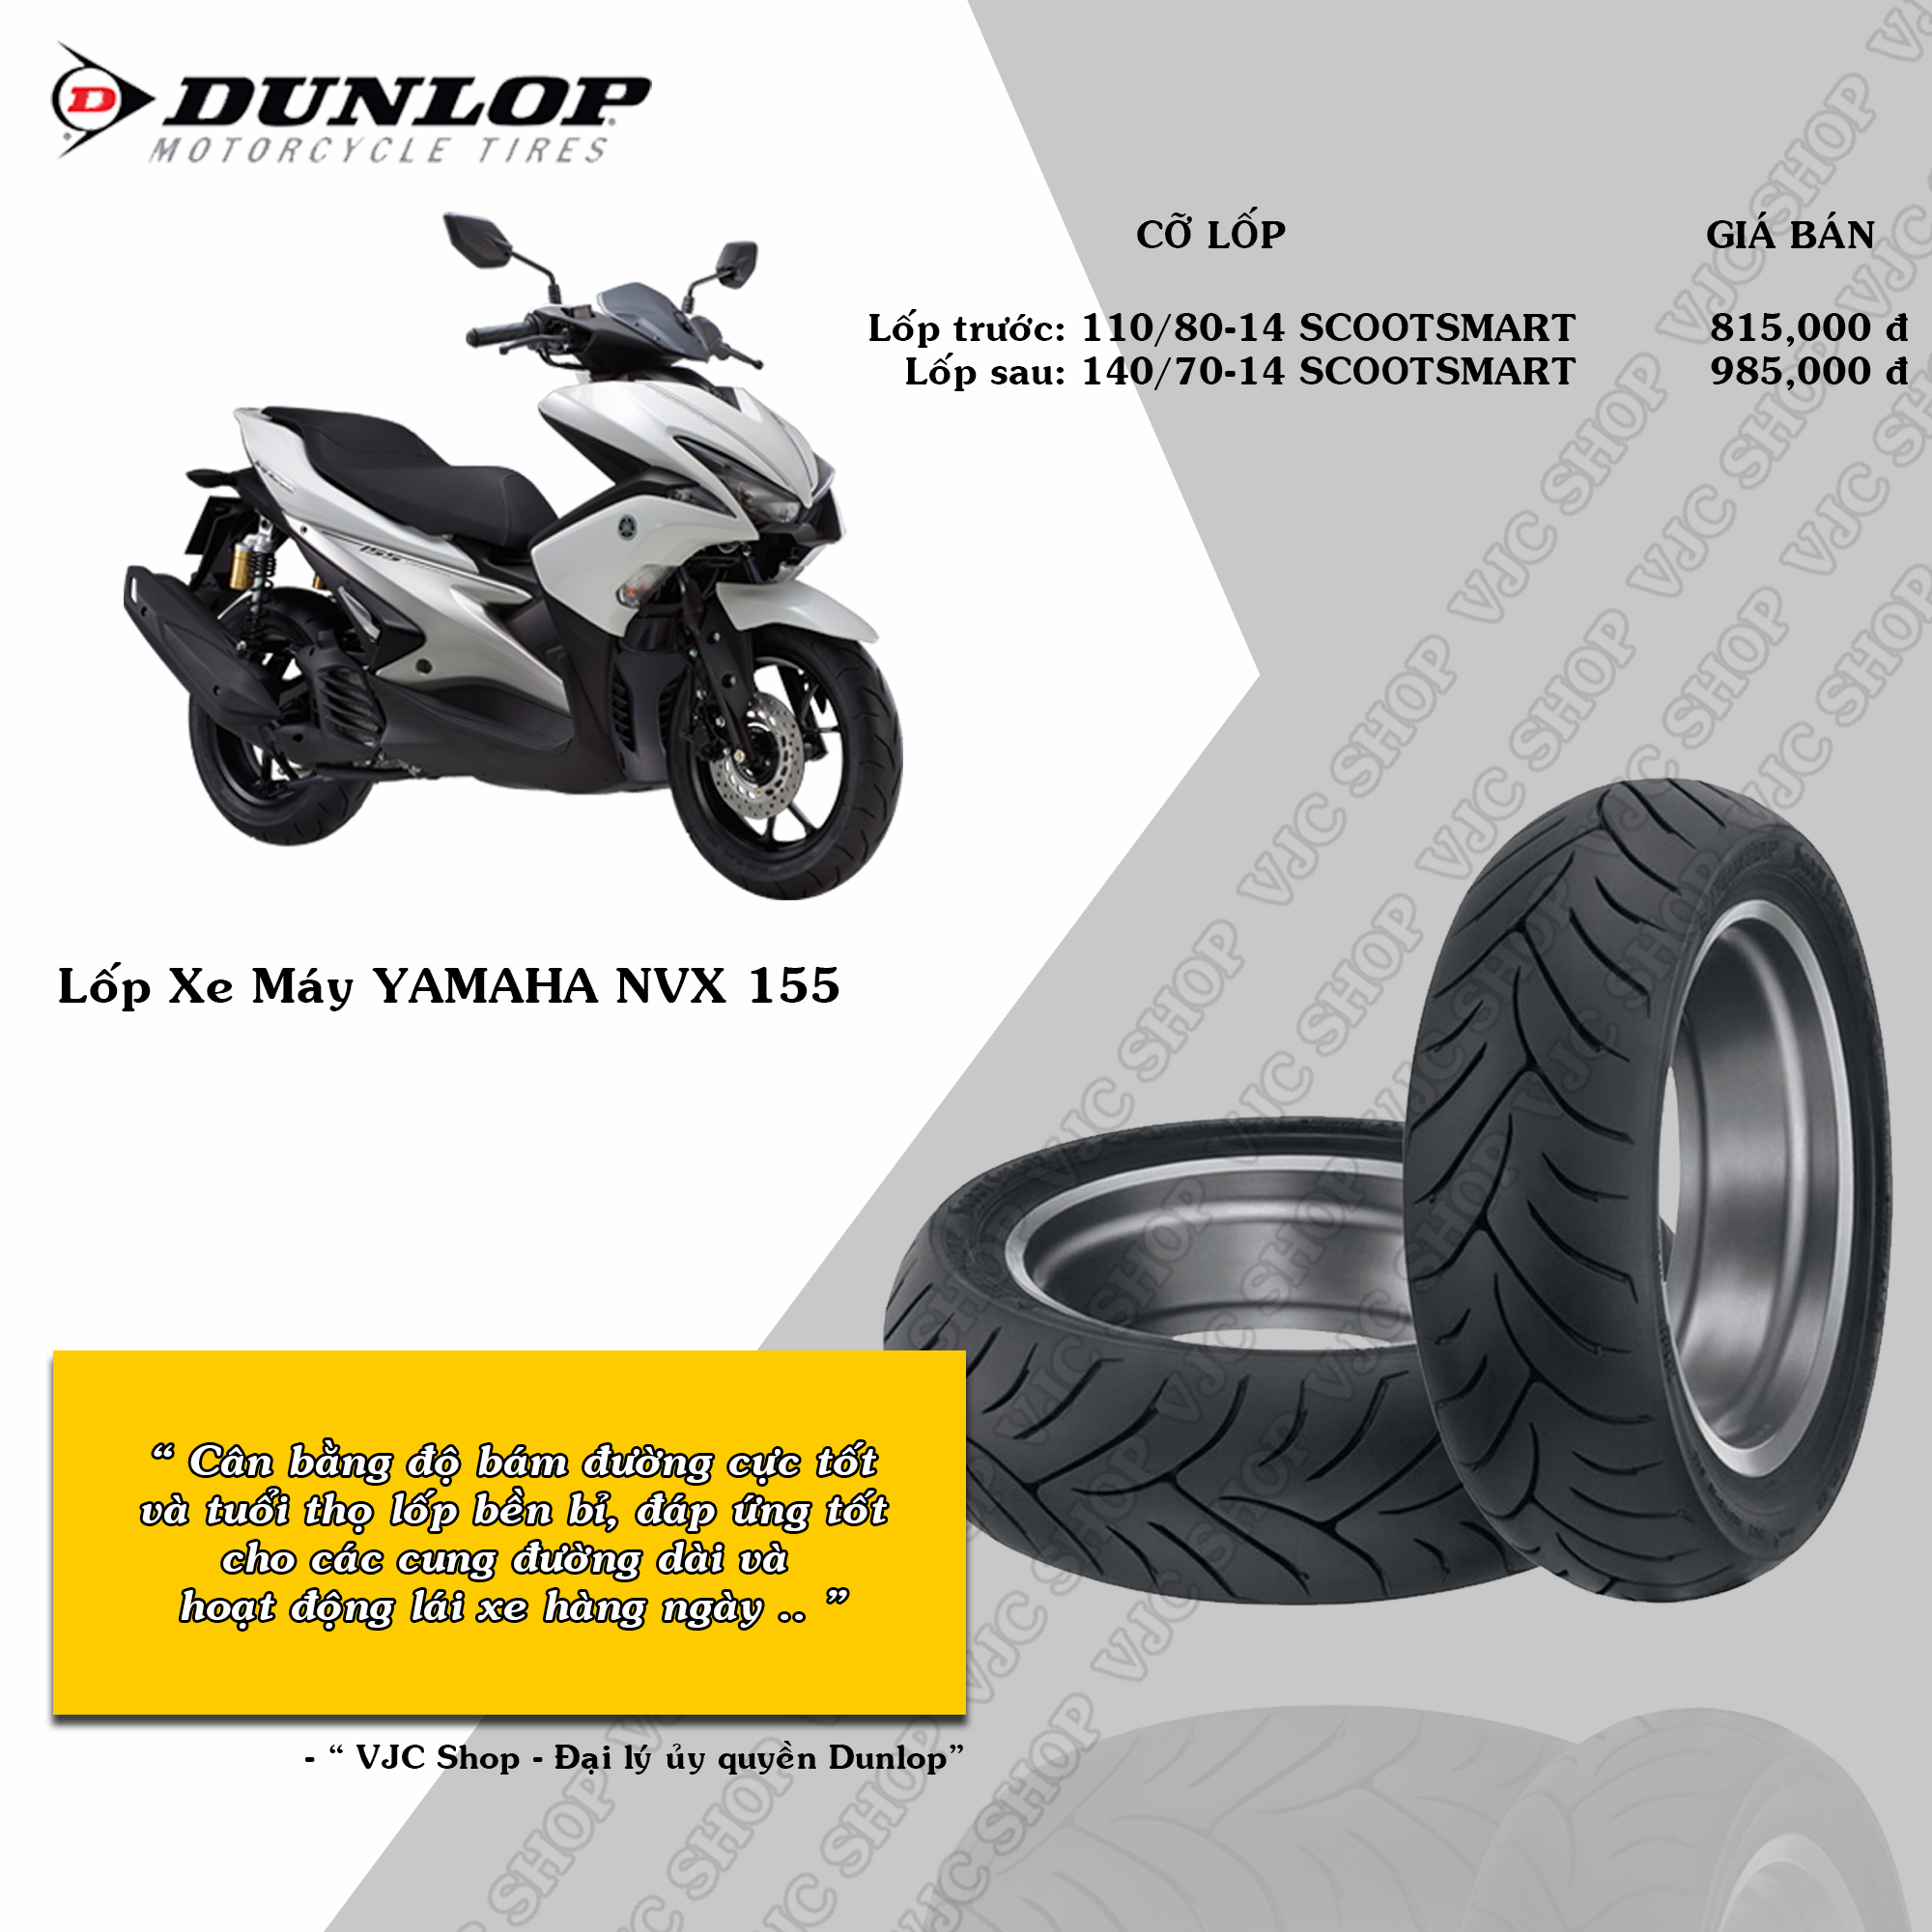 Lốp Dunlop Cho Yamaha NVX 155 Chính Hãng